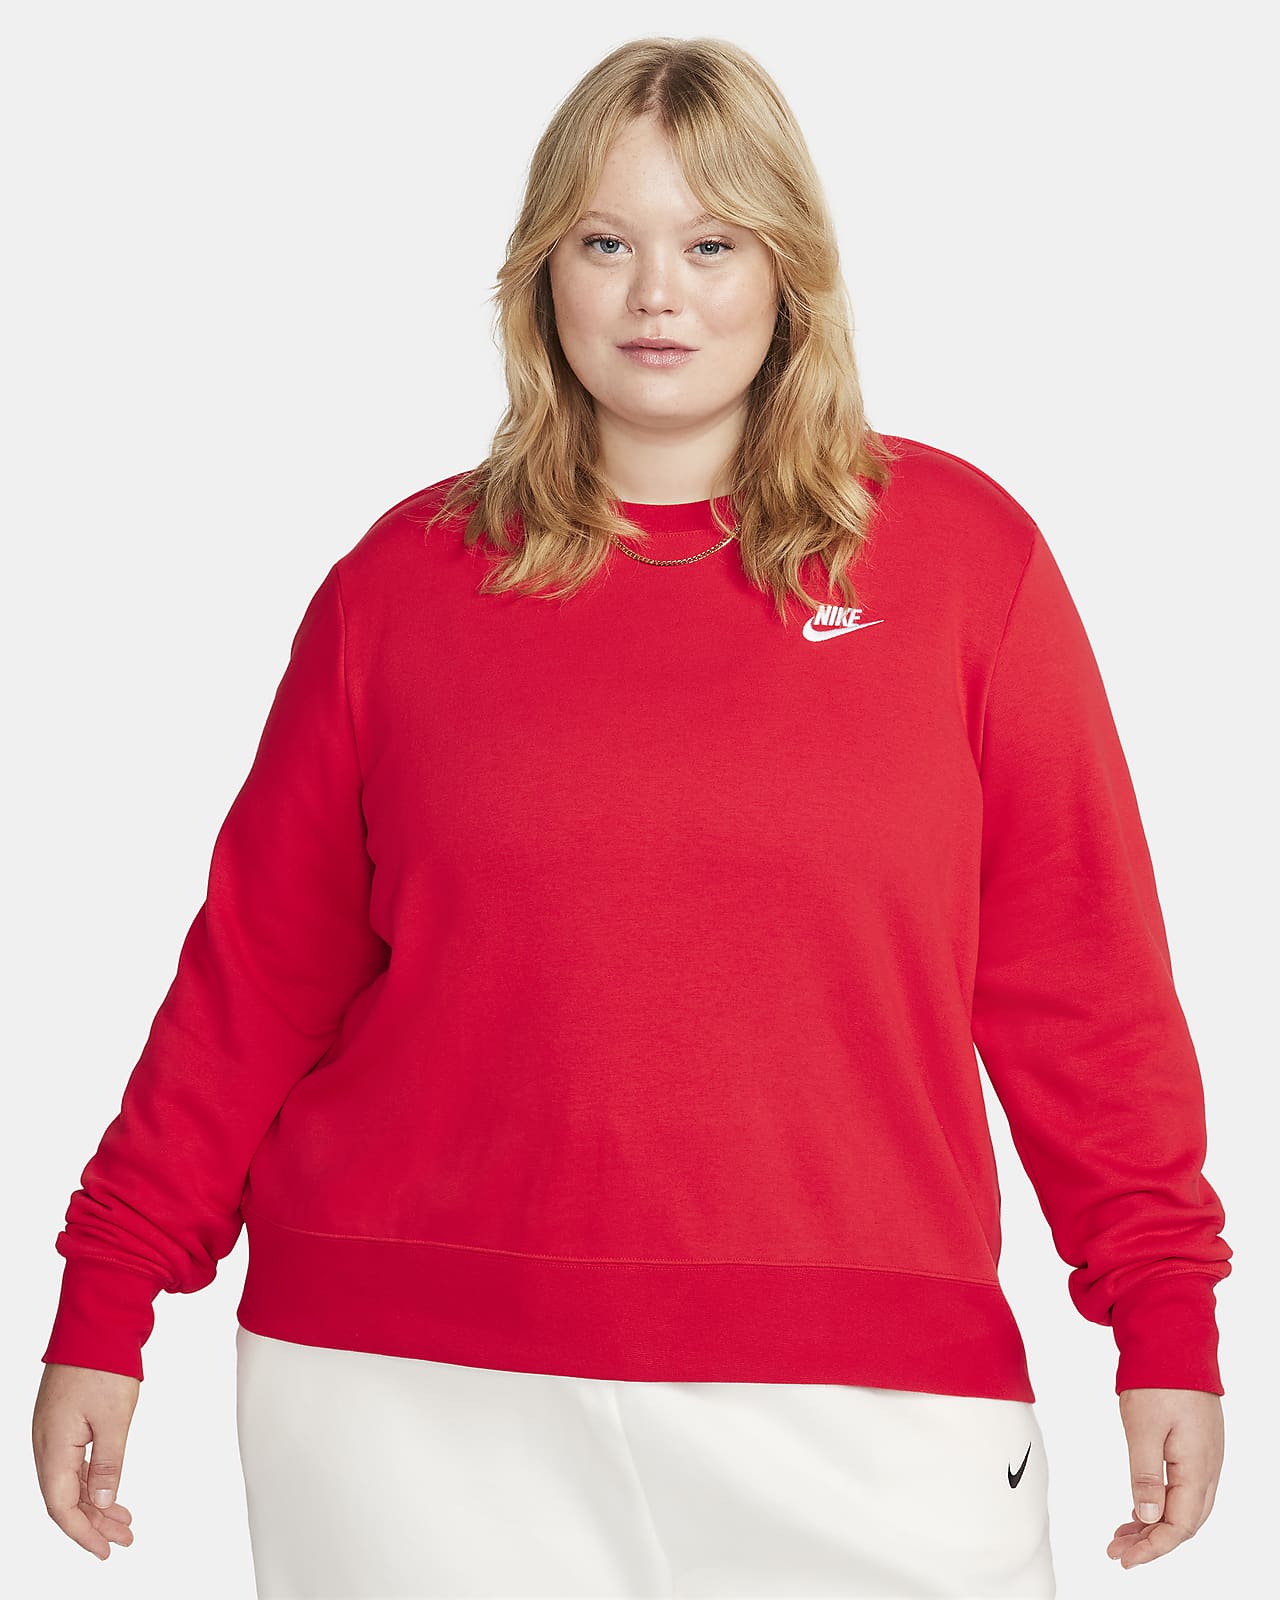 Nike Sportswear Club Fleece Women's Crew-Neck Sweatshirt (Plus